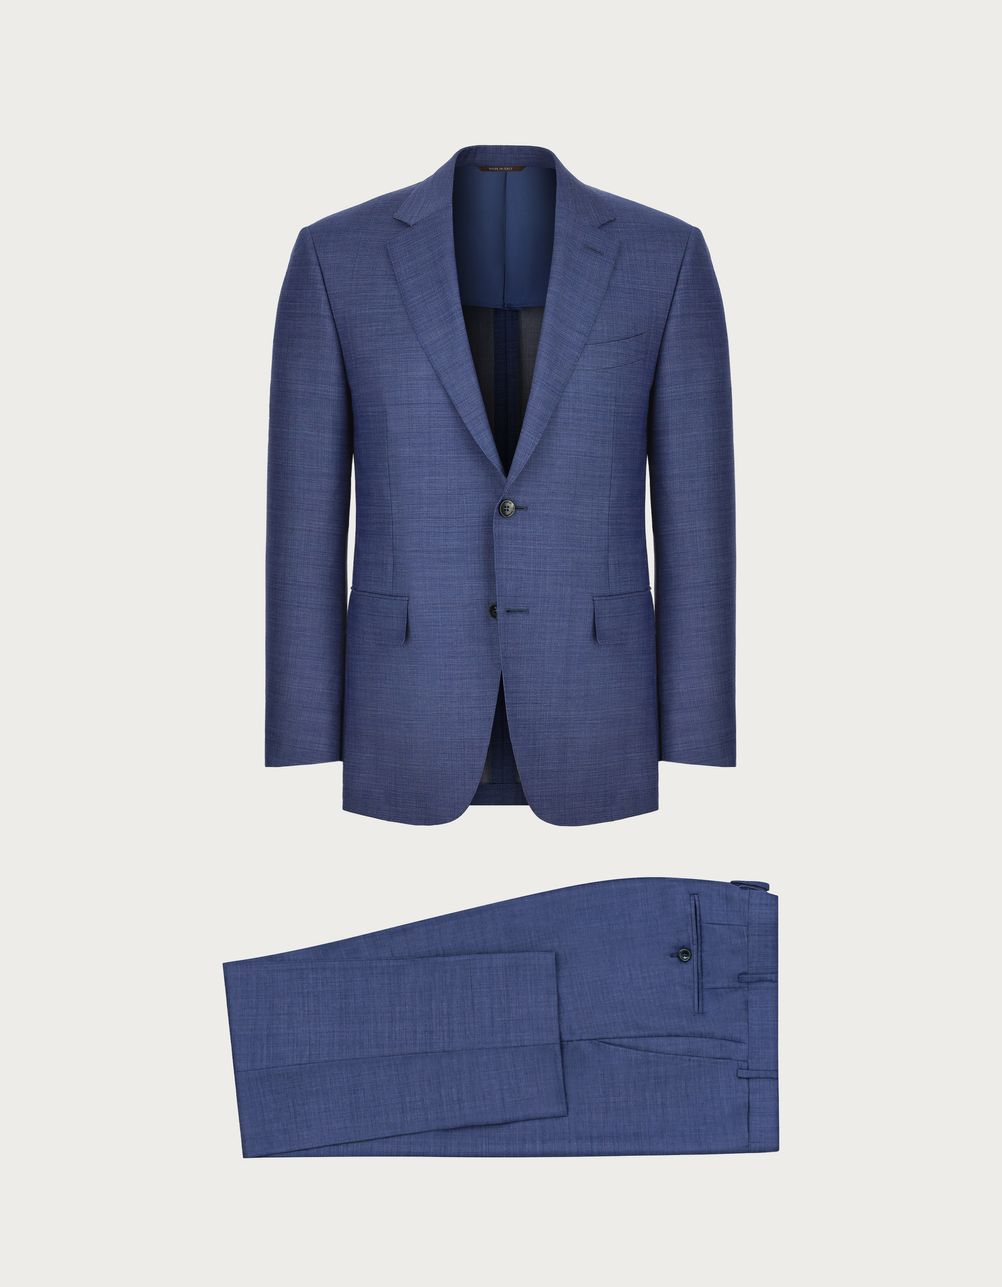 Light blue suit in wool